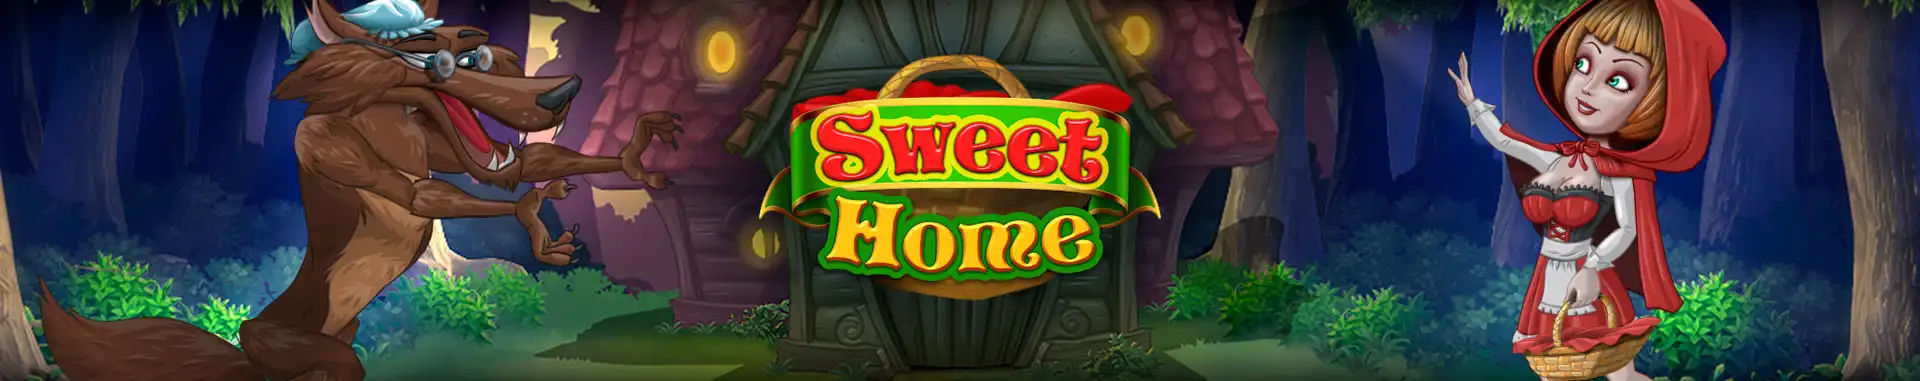 Video Bingo Online Sweet Home